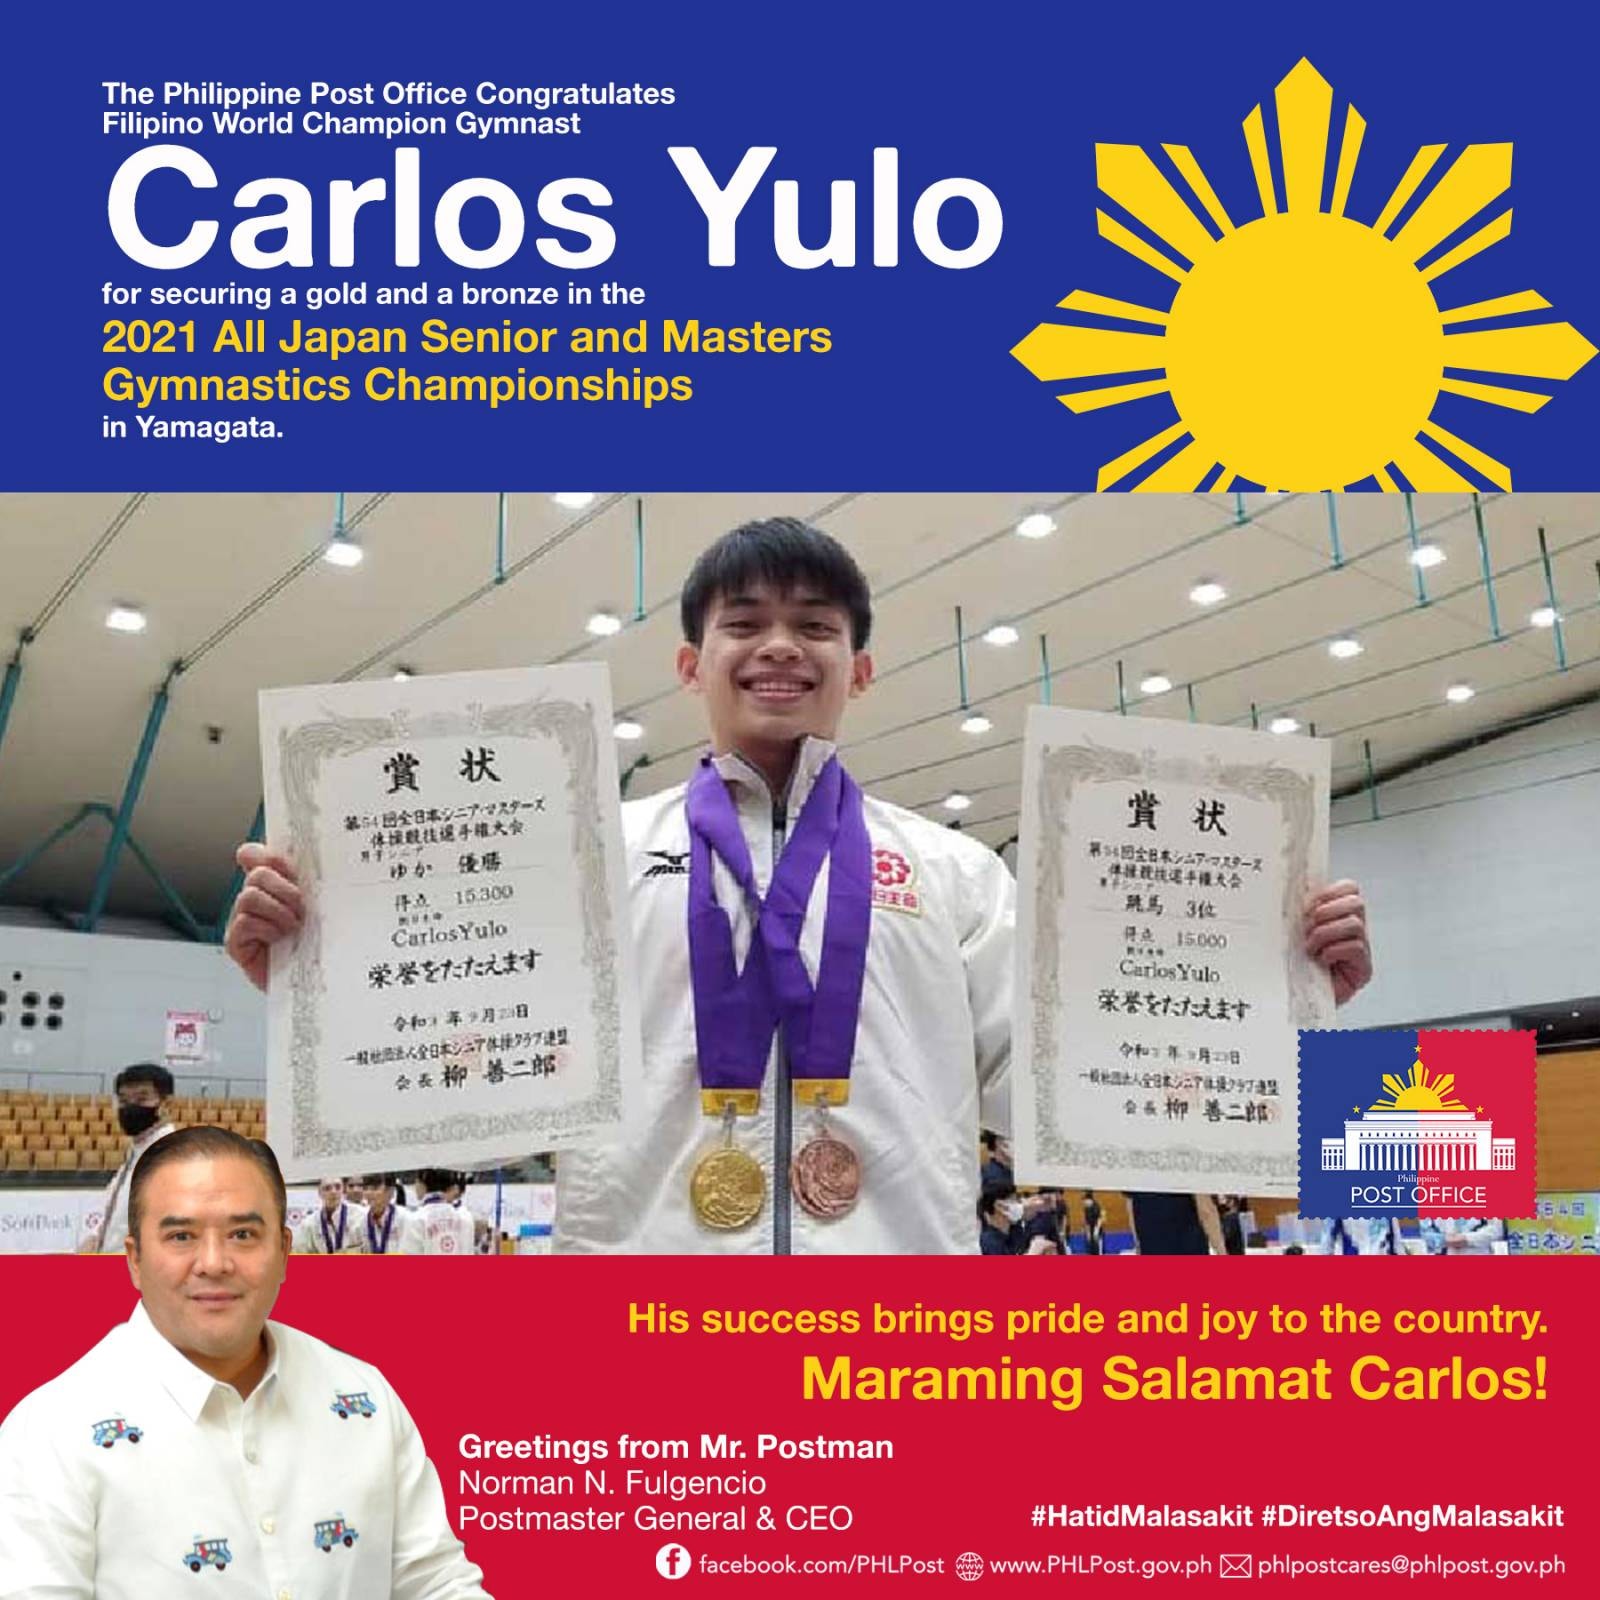 Congratulations Carlos Yulo